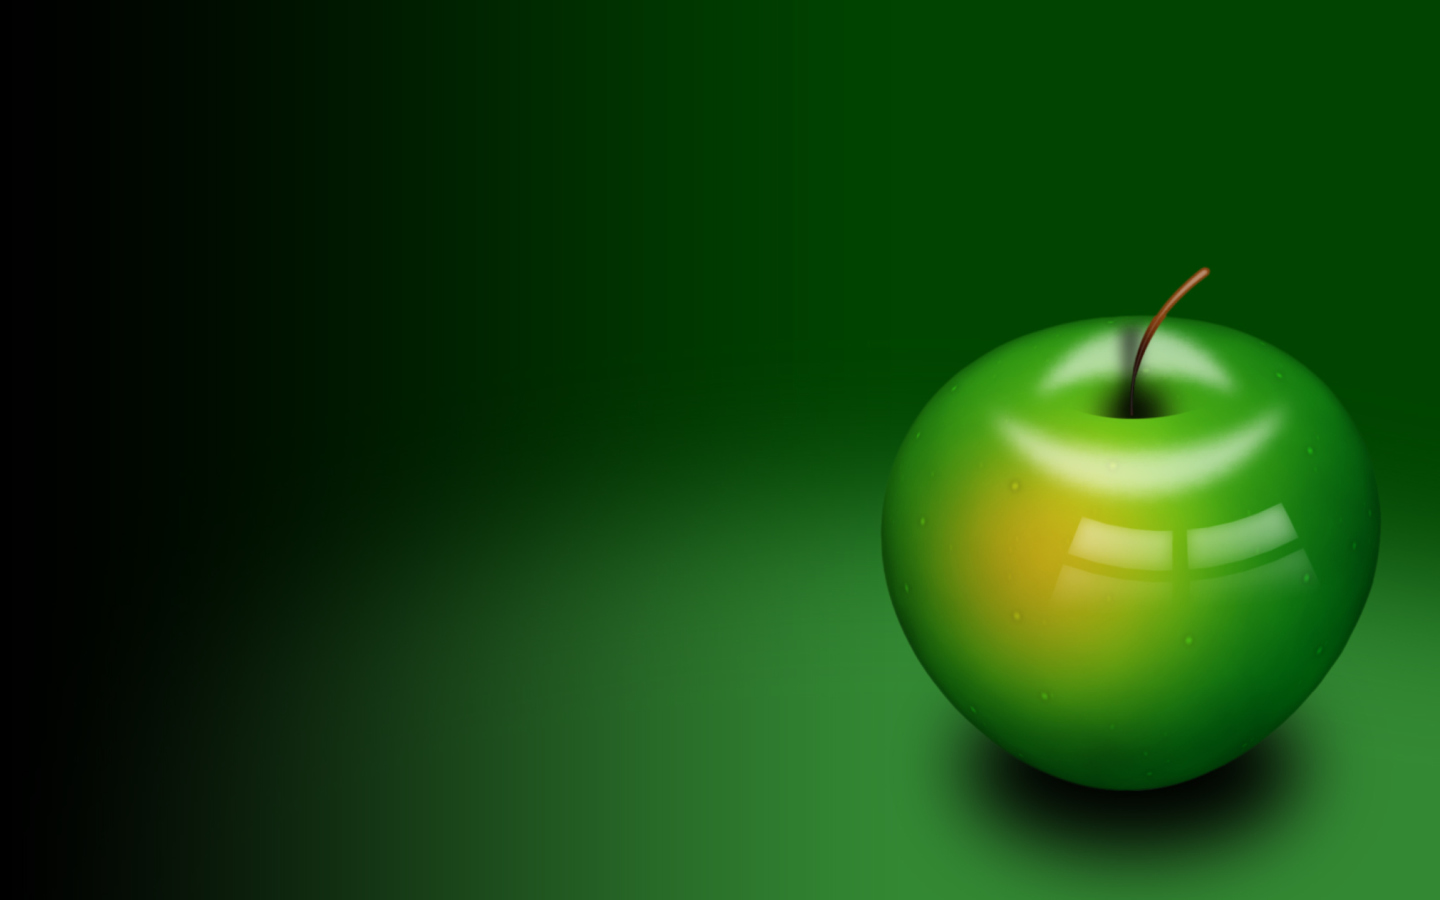 Das Green Apple Wallpaper 1440x900